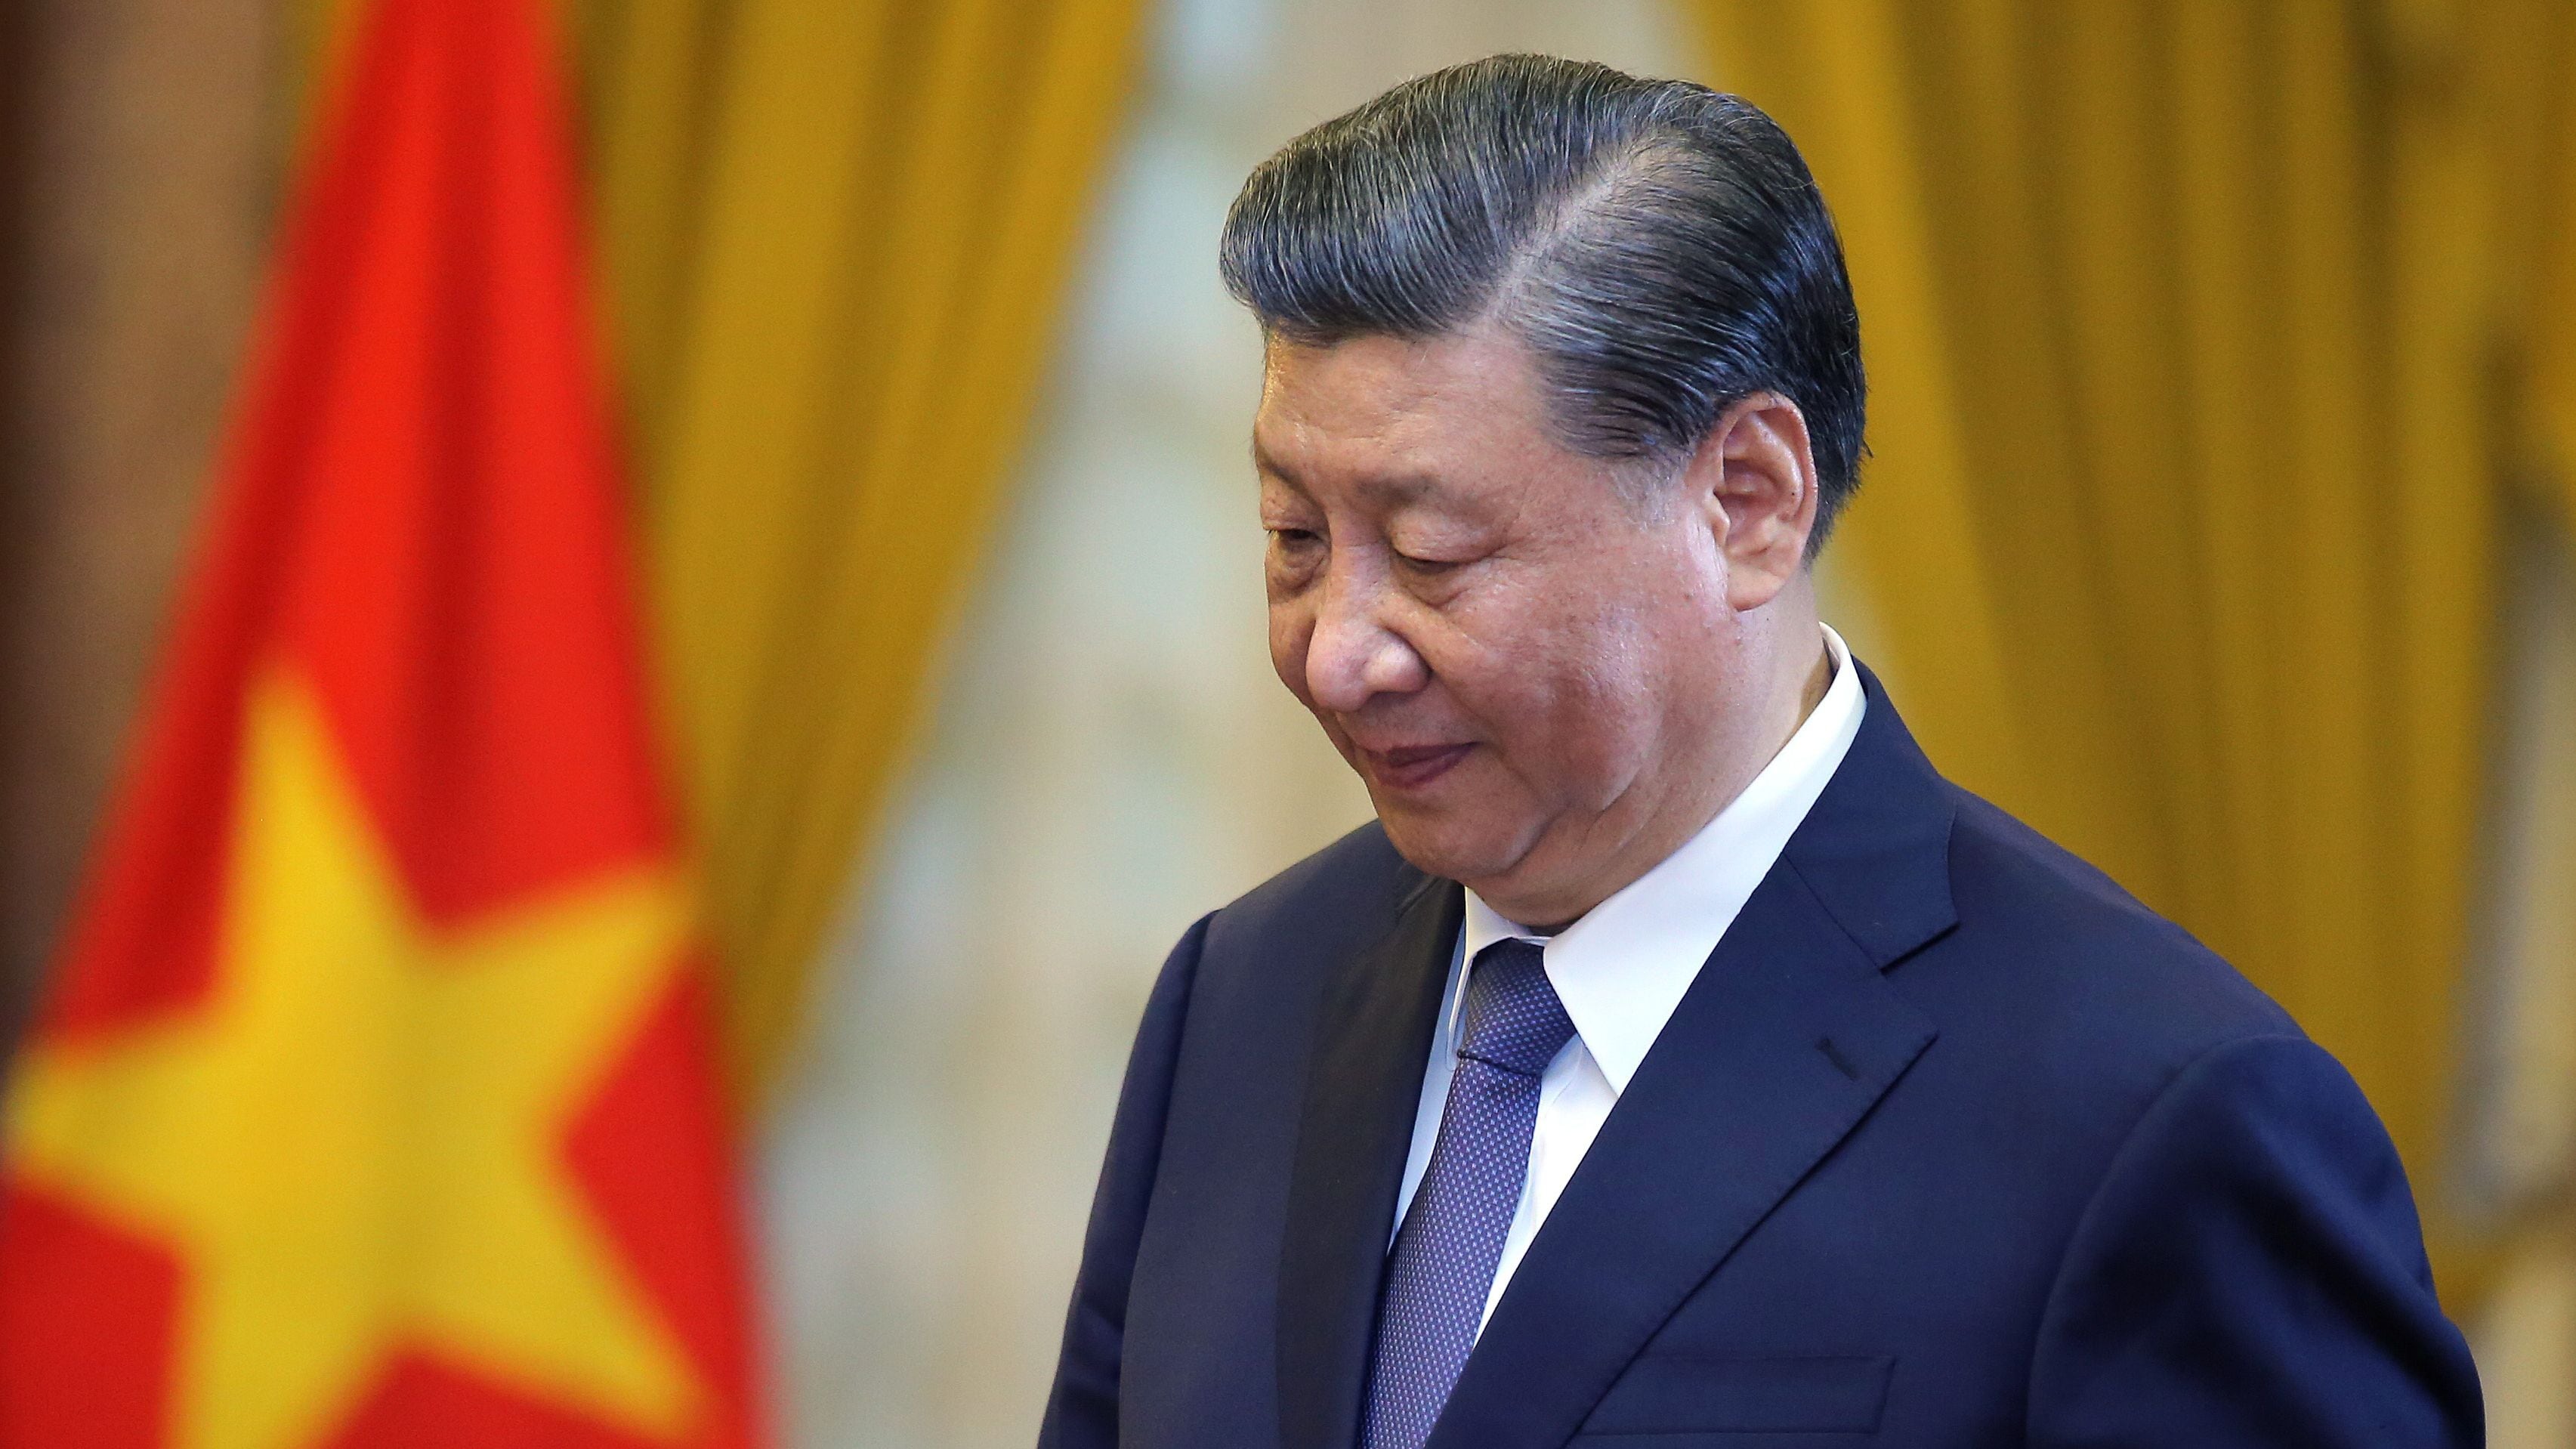 Imagen de archivo del presidente chino, Xi Jinping. EFE/EPA/LUONG THAI LINH / POOL